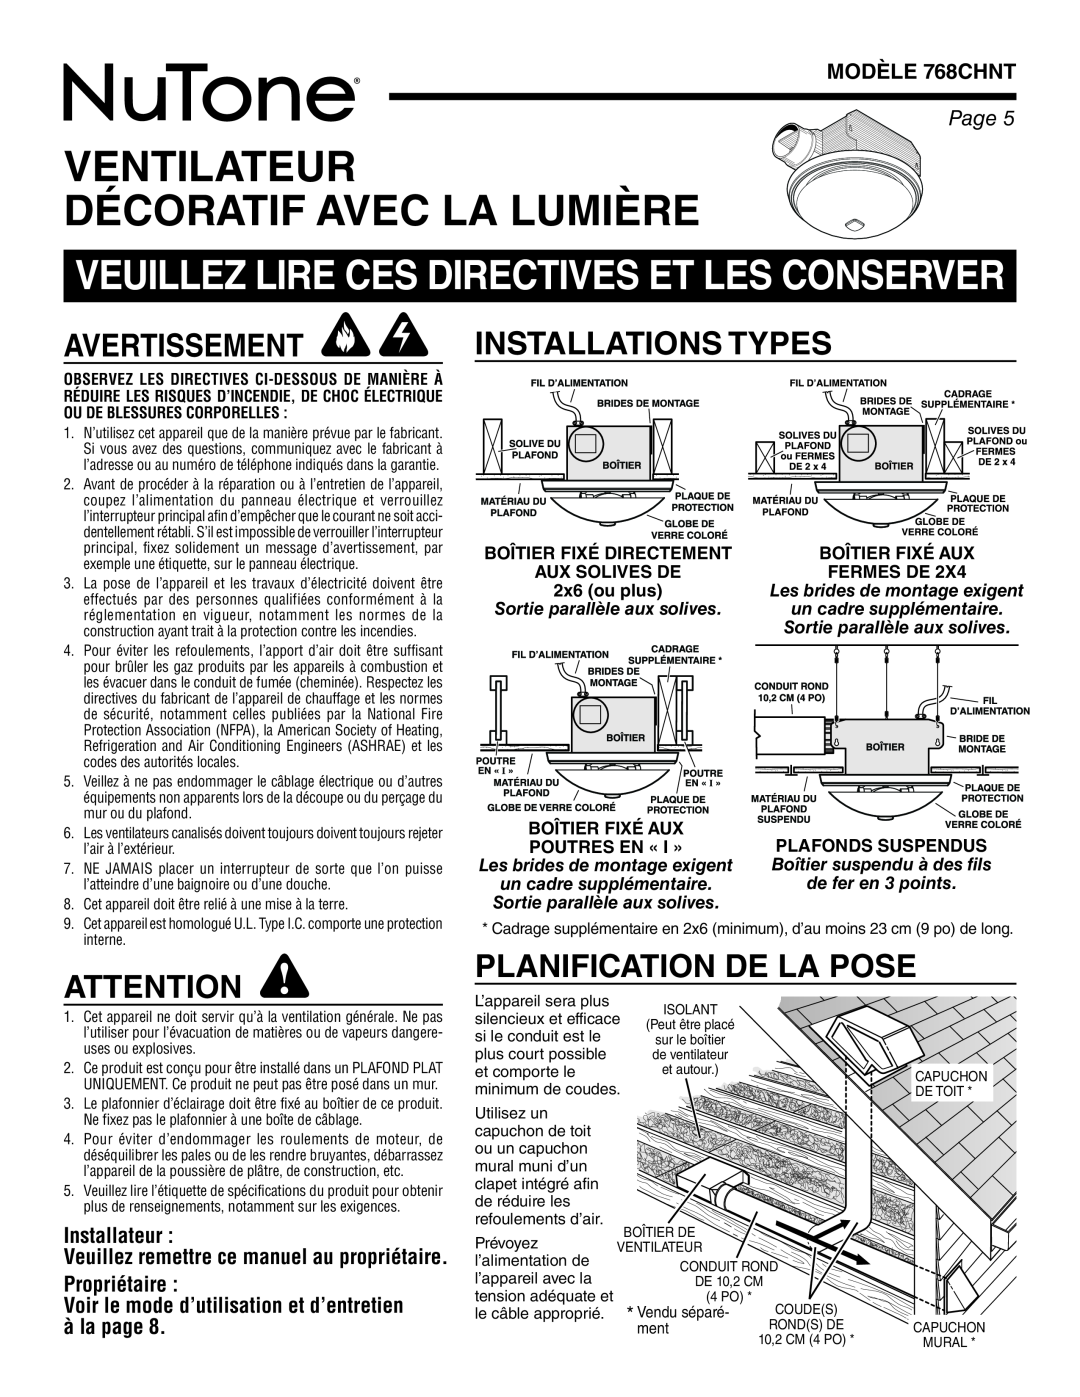 NuTone 768CHNT Ventilateur Décoratif Avec La Lumière, Avertissement, Installations Types, Planification De La Pose, Page 